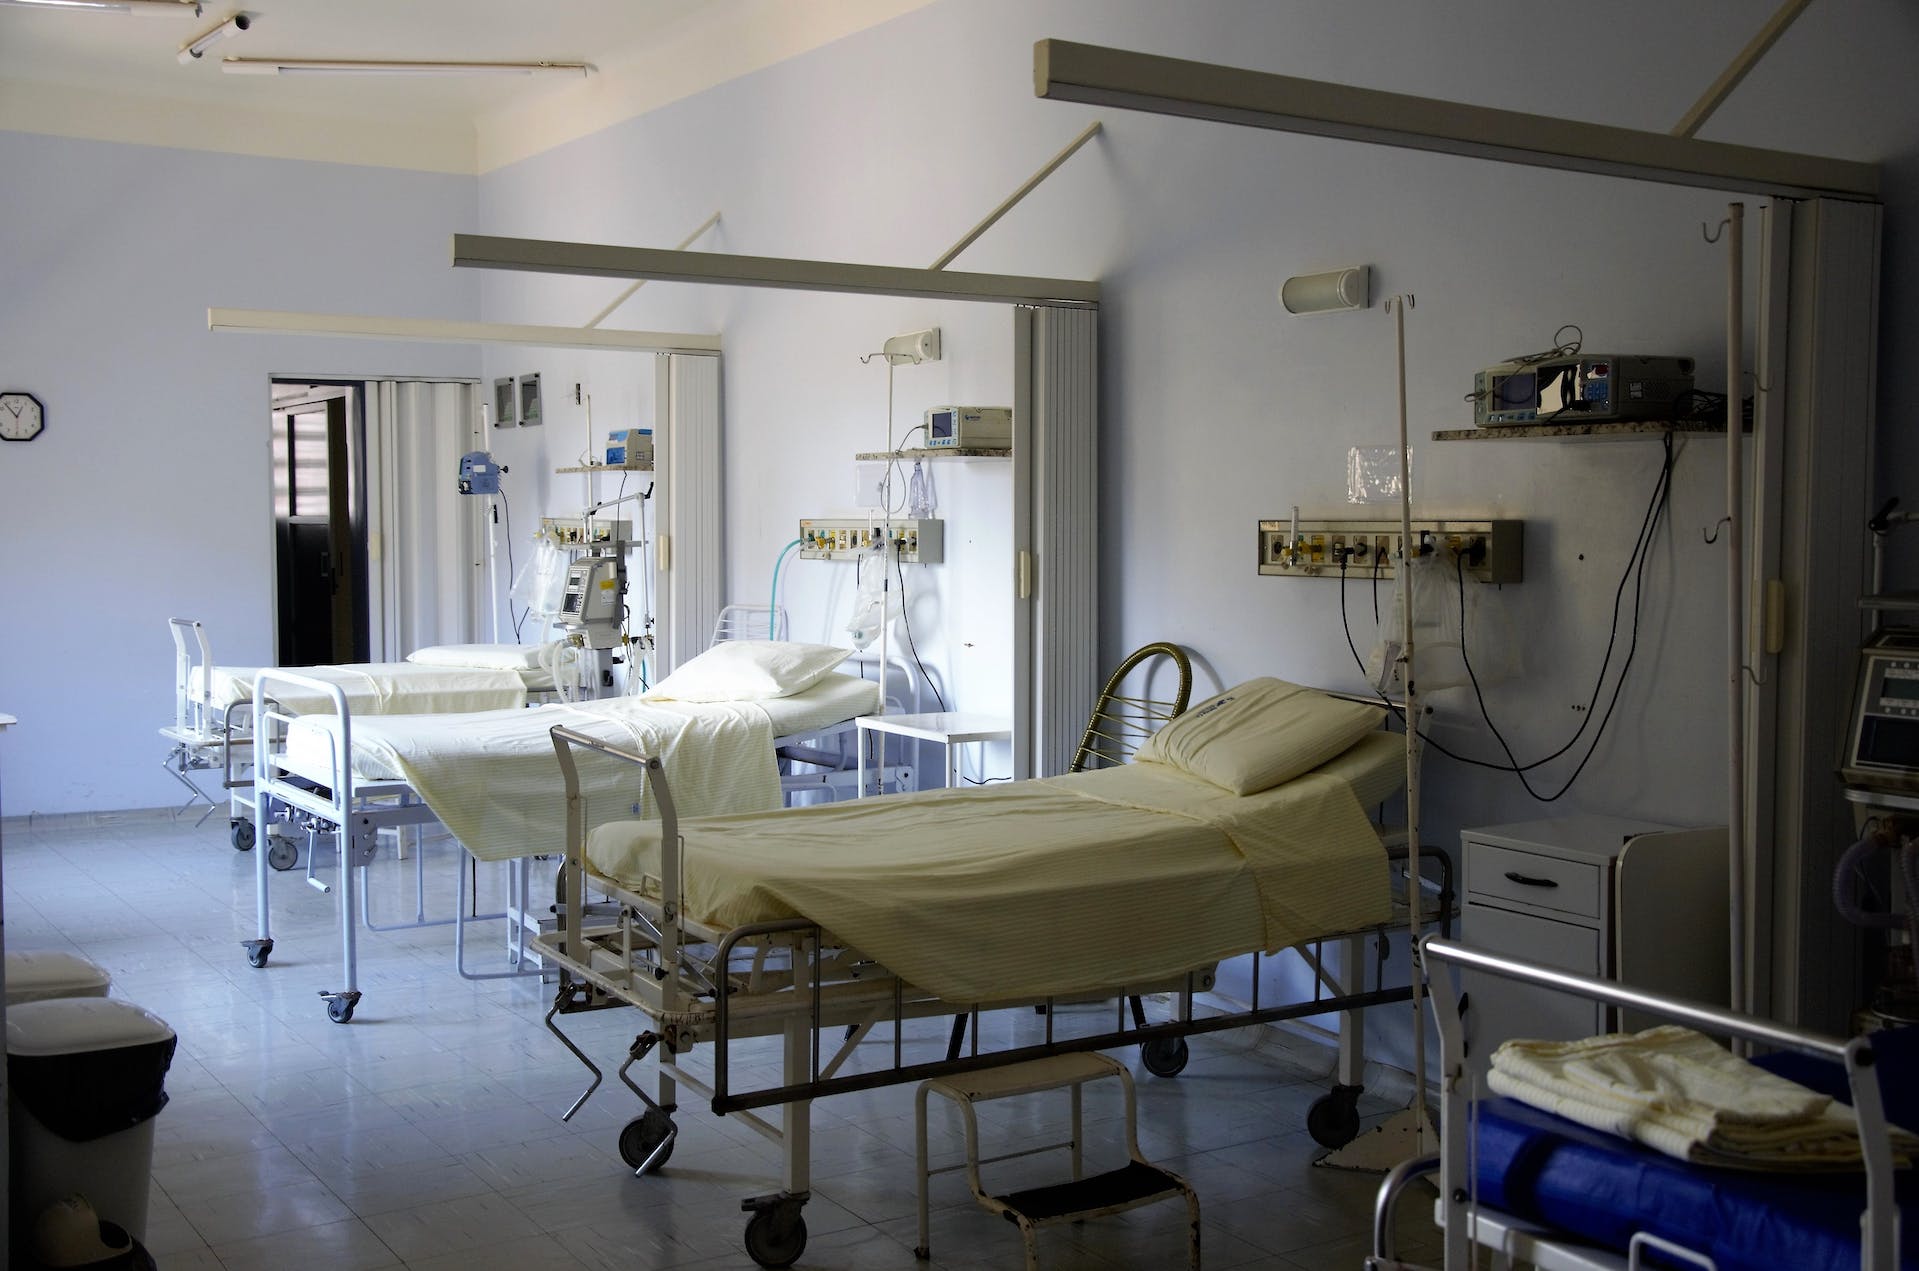 Salle d'hôpital avec des lits vides | Source : Pexels